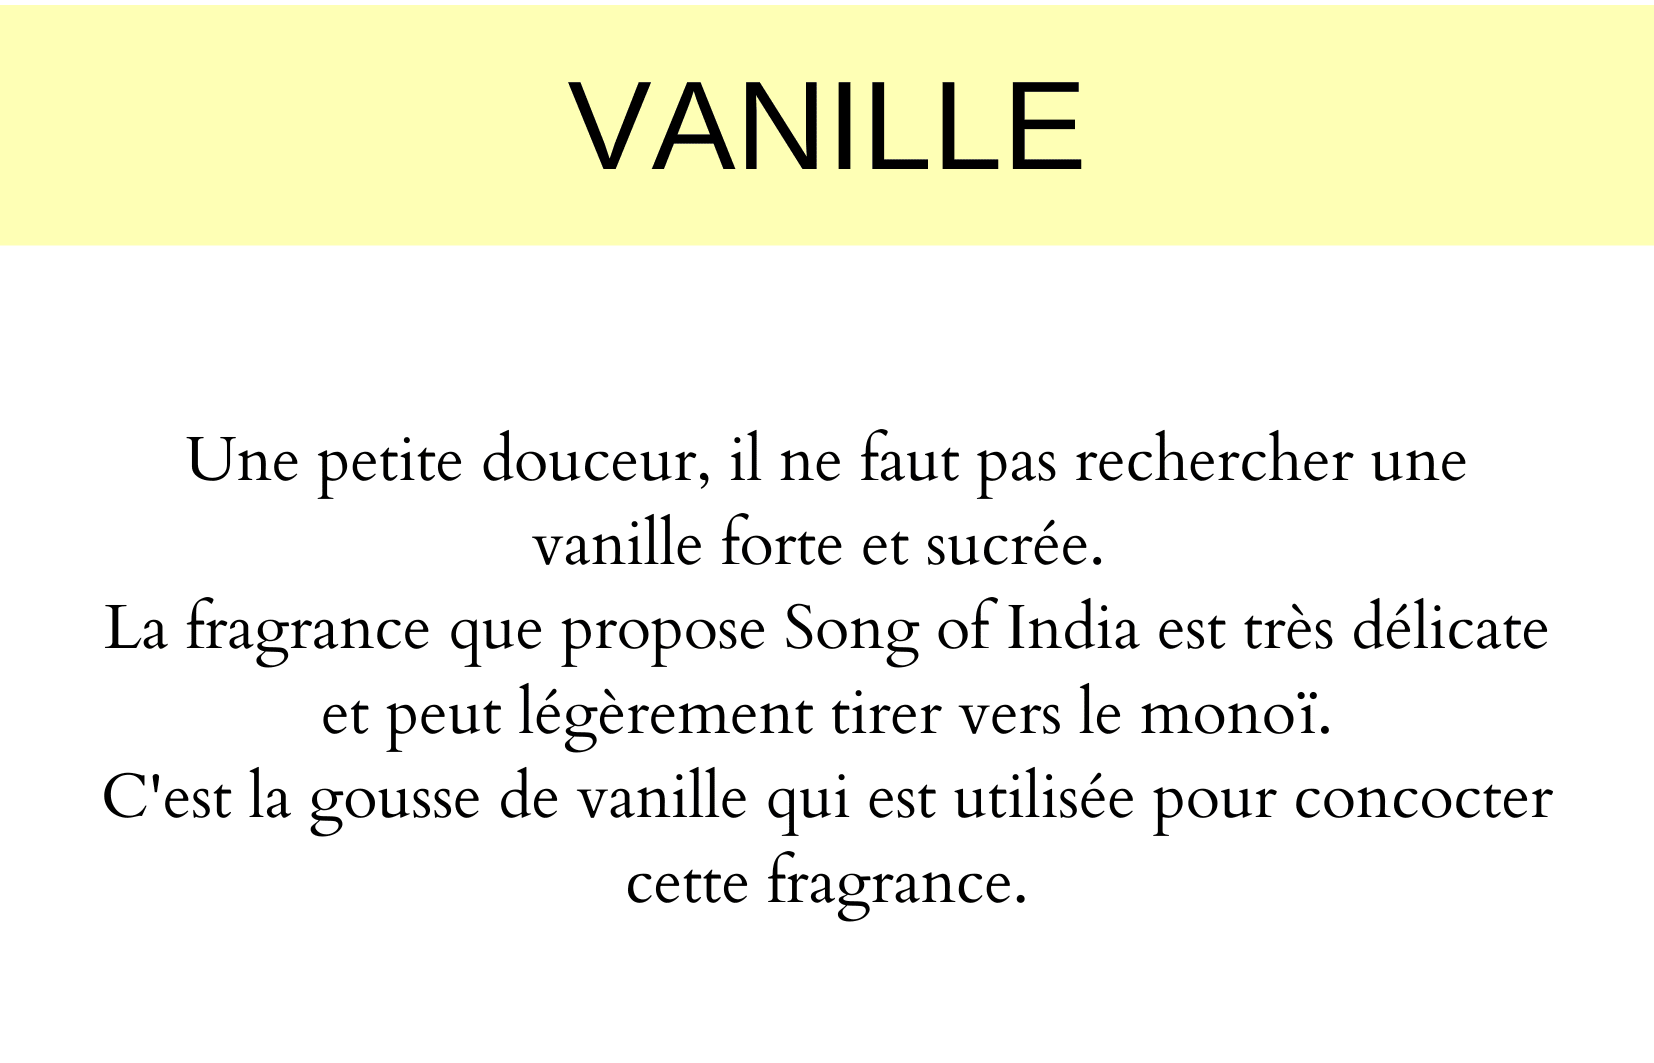 Fragrance à la gousse de vanille